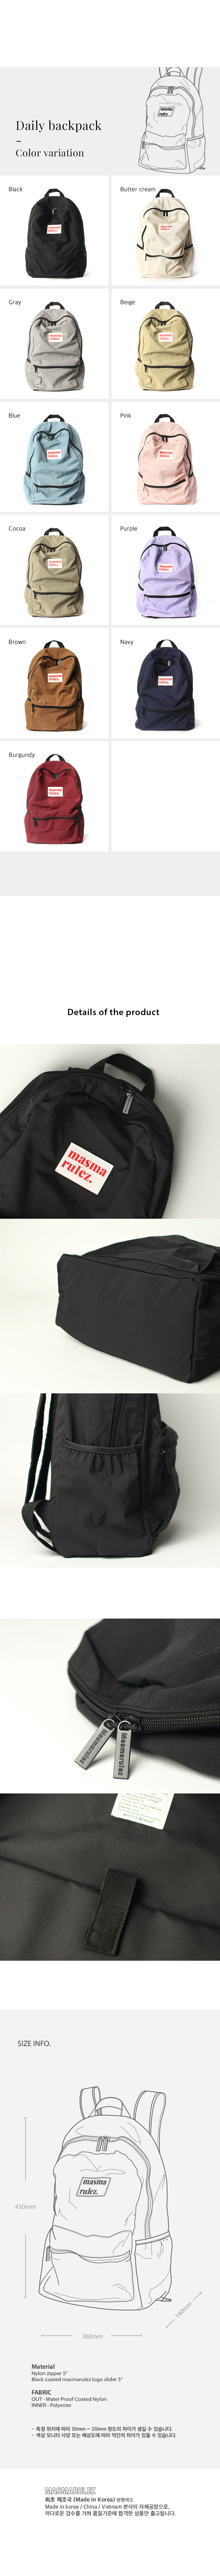 Daily bagpack _ Black 43,470원 - 마스마룰즈 패션잡화, 여성가방, 백팩, 패브릭 바보사랑 Daily bagpack _ Black 43,470원 - 마스마룰즈 패션잡화, 여성가방, 백팩, 패브릭 바보사랑